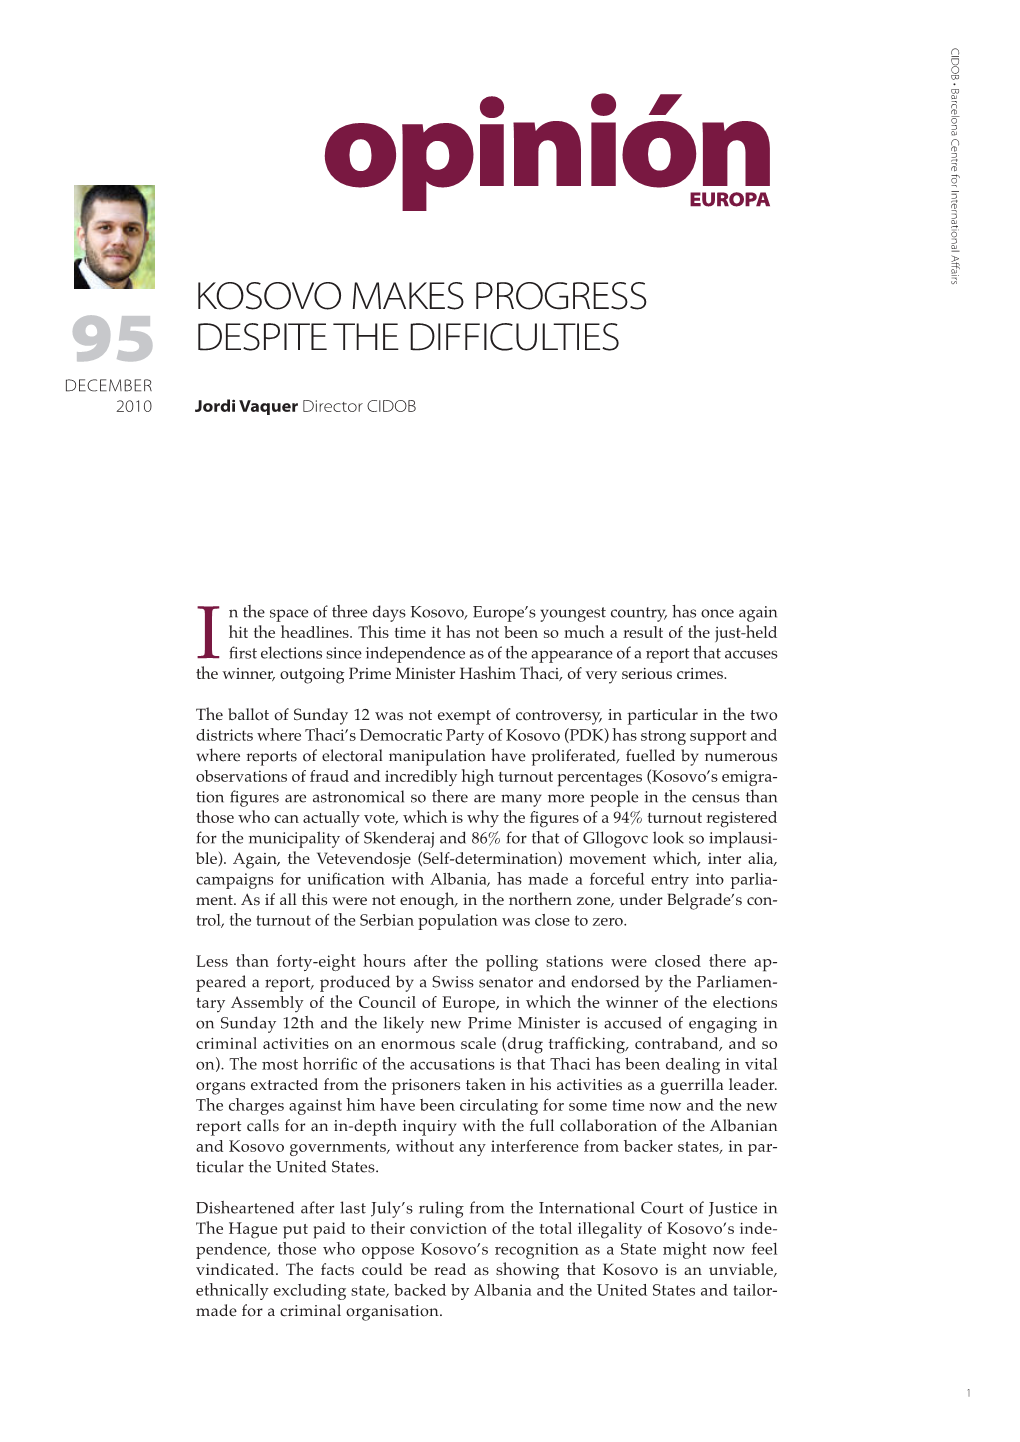 Kosovo Makes Progress Despite the Difficulties